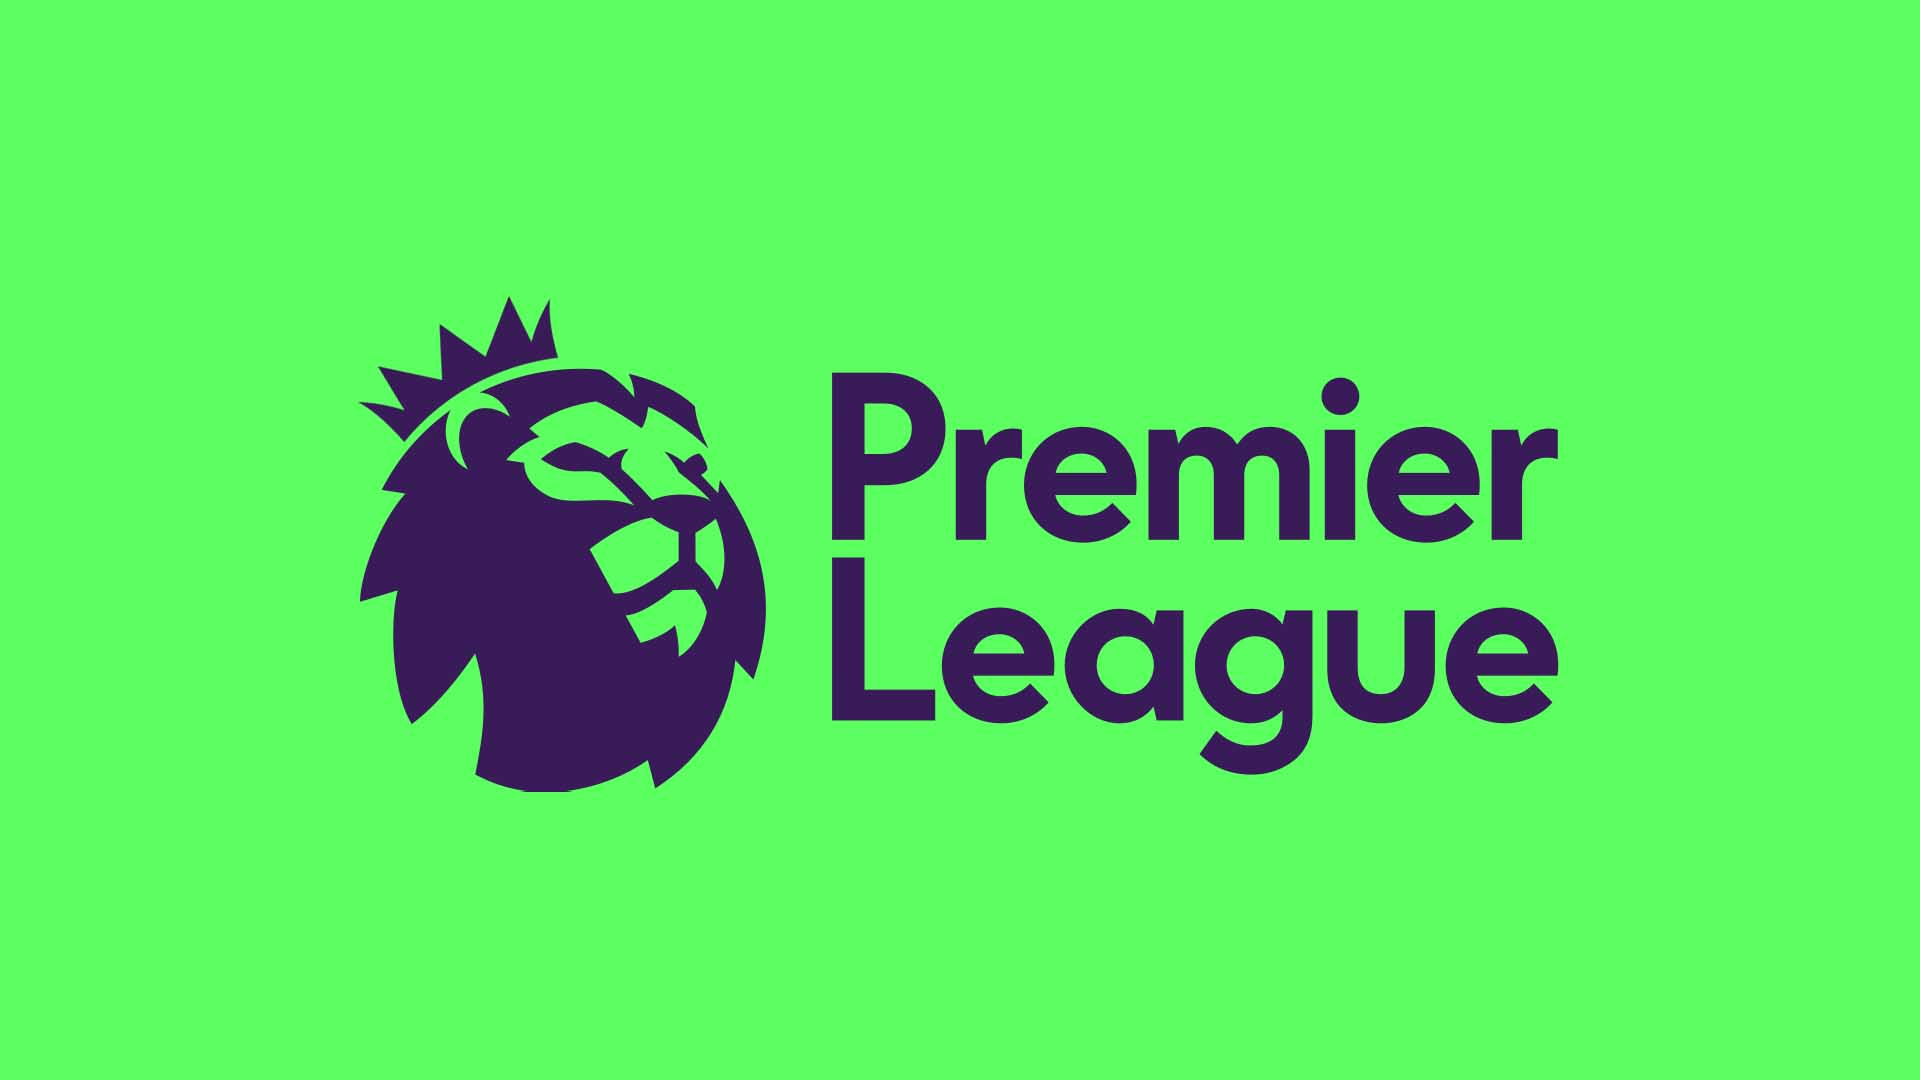 A Premier League logo